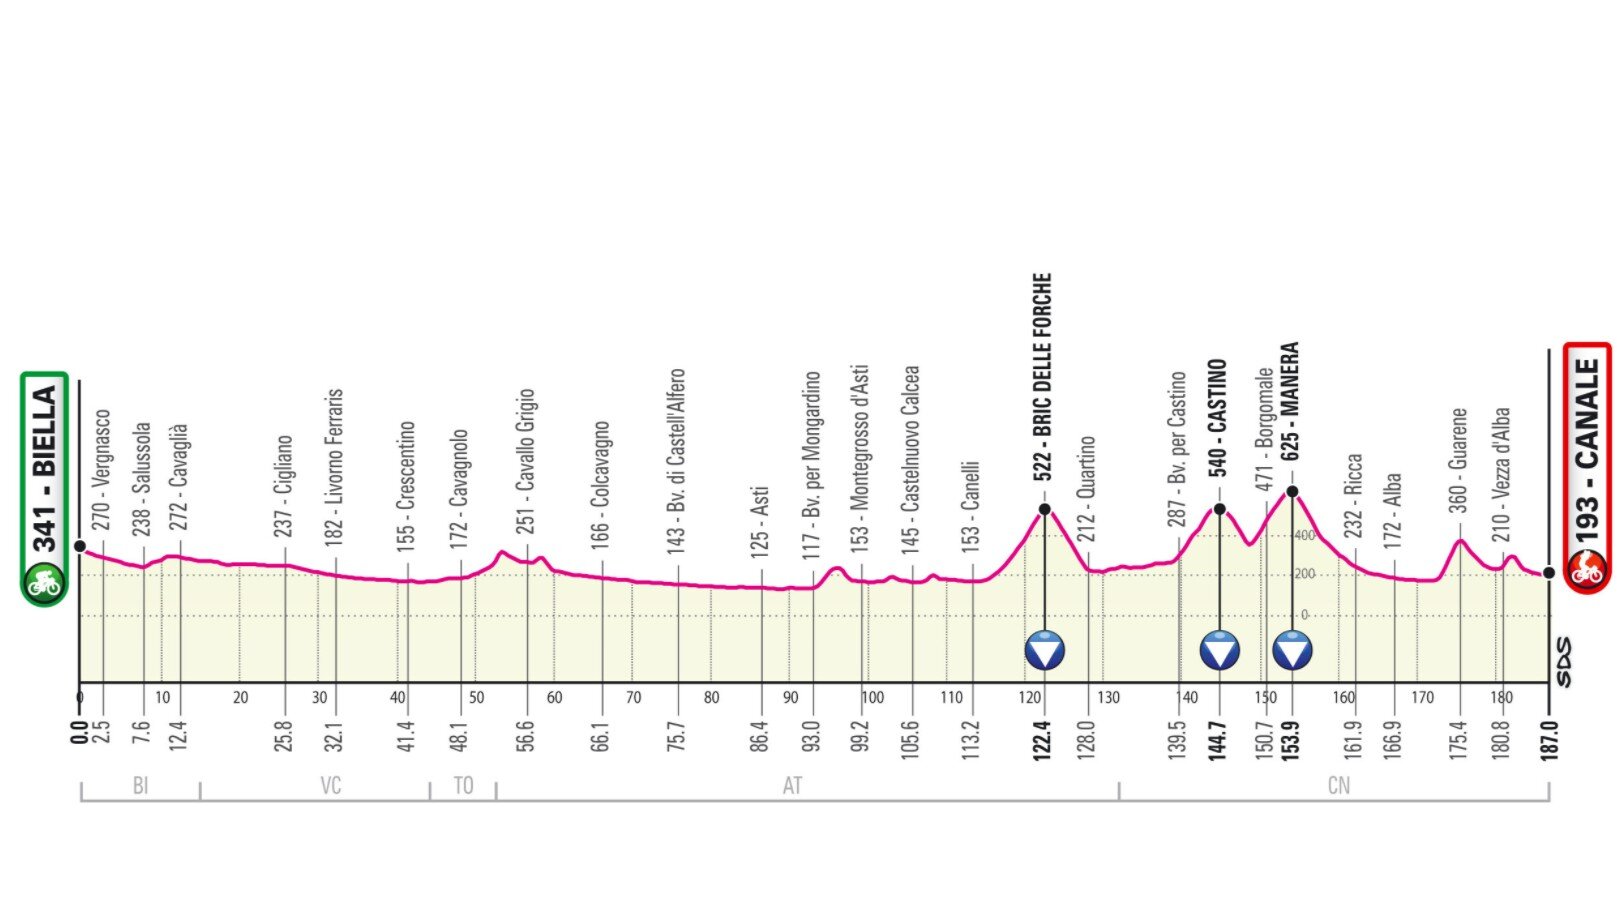 Etapa 3 Giro Italia 2021